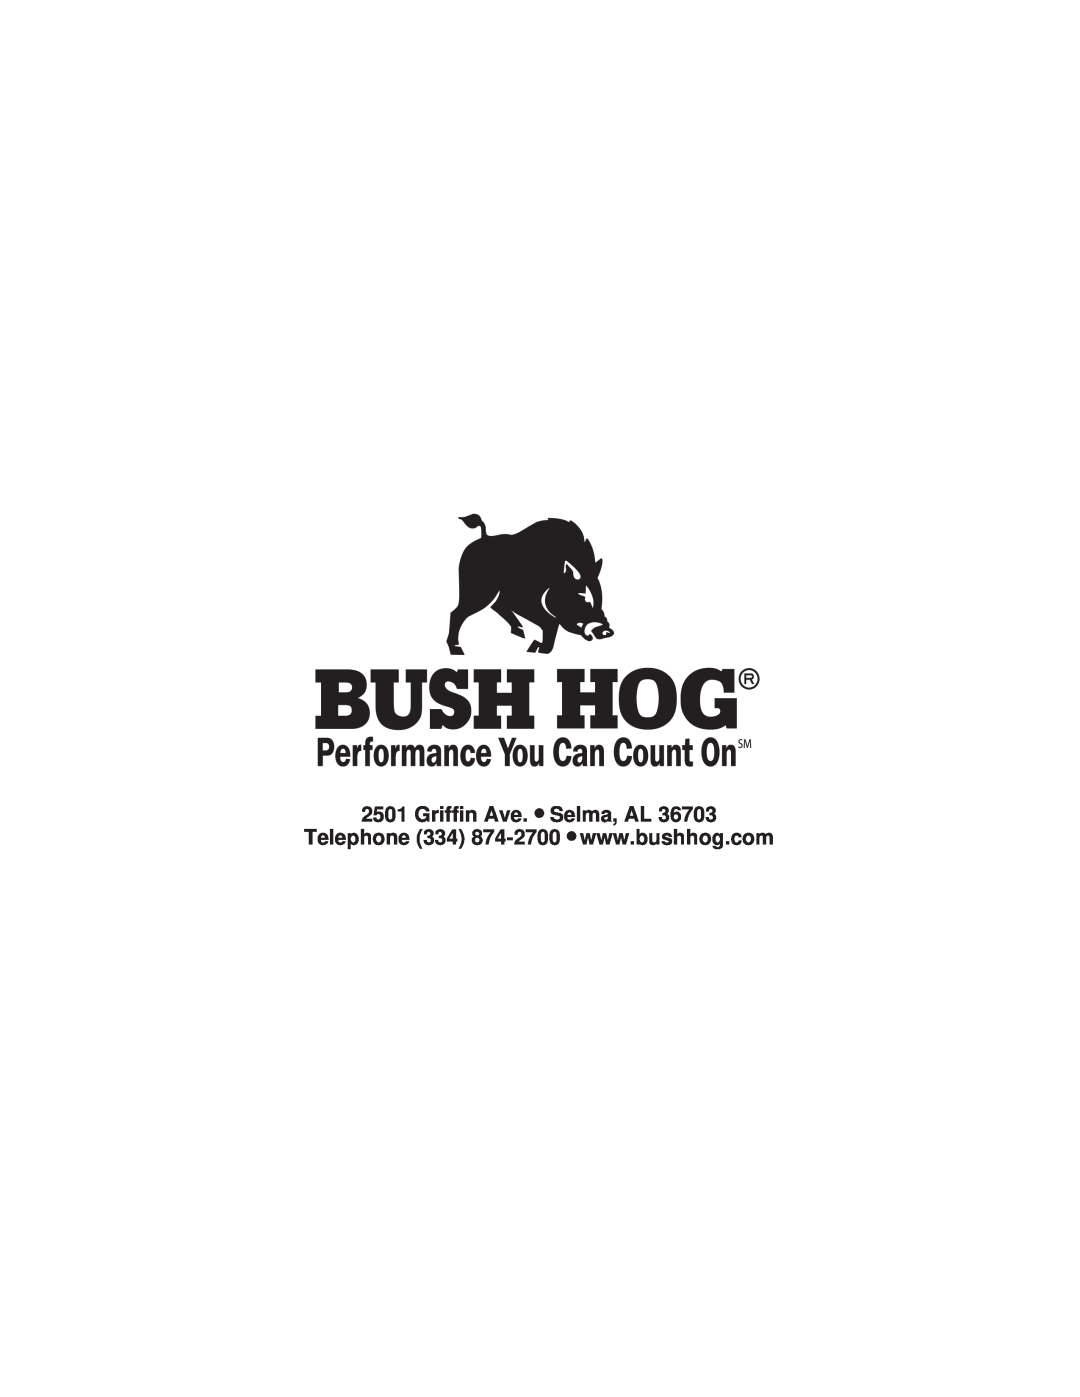 Bush Hog ATH 900 manual Griffin Ave. Selma, AL 